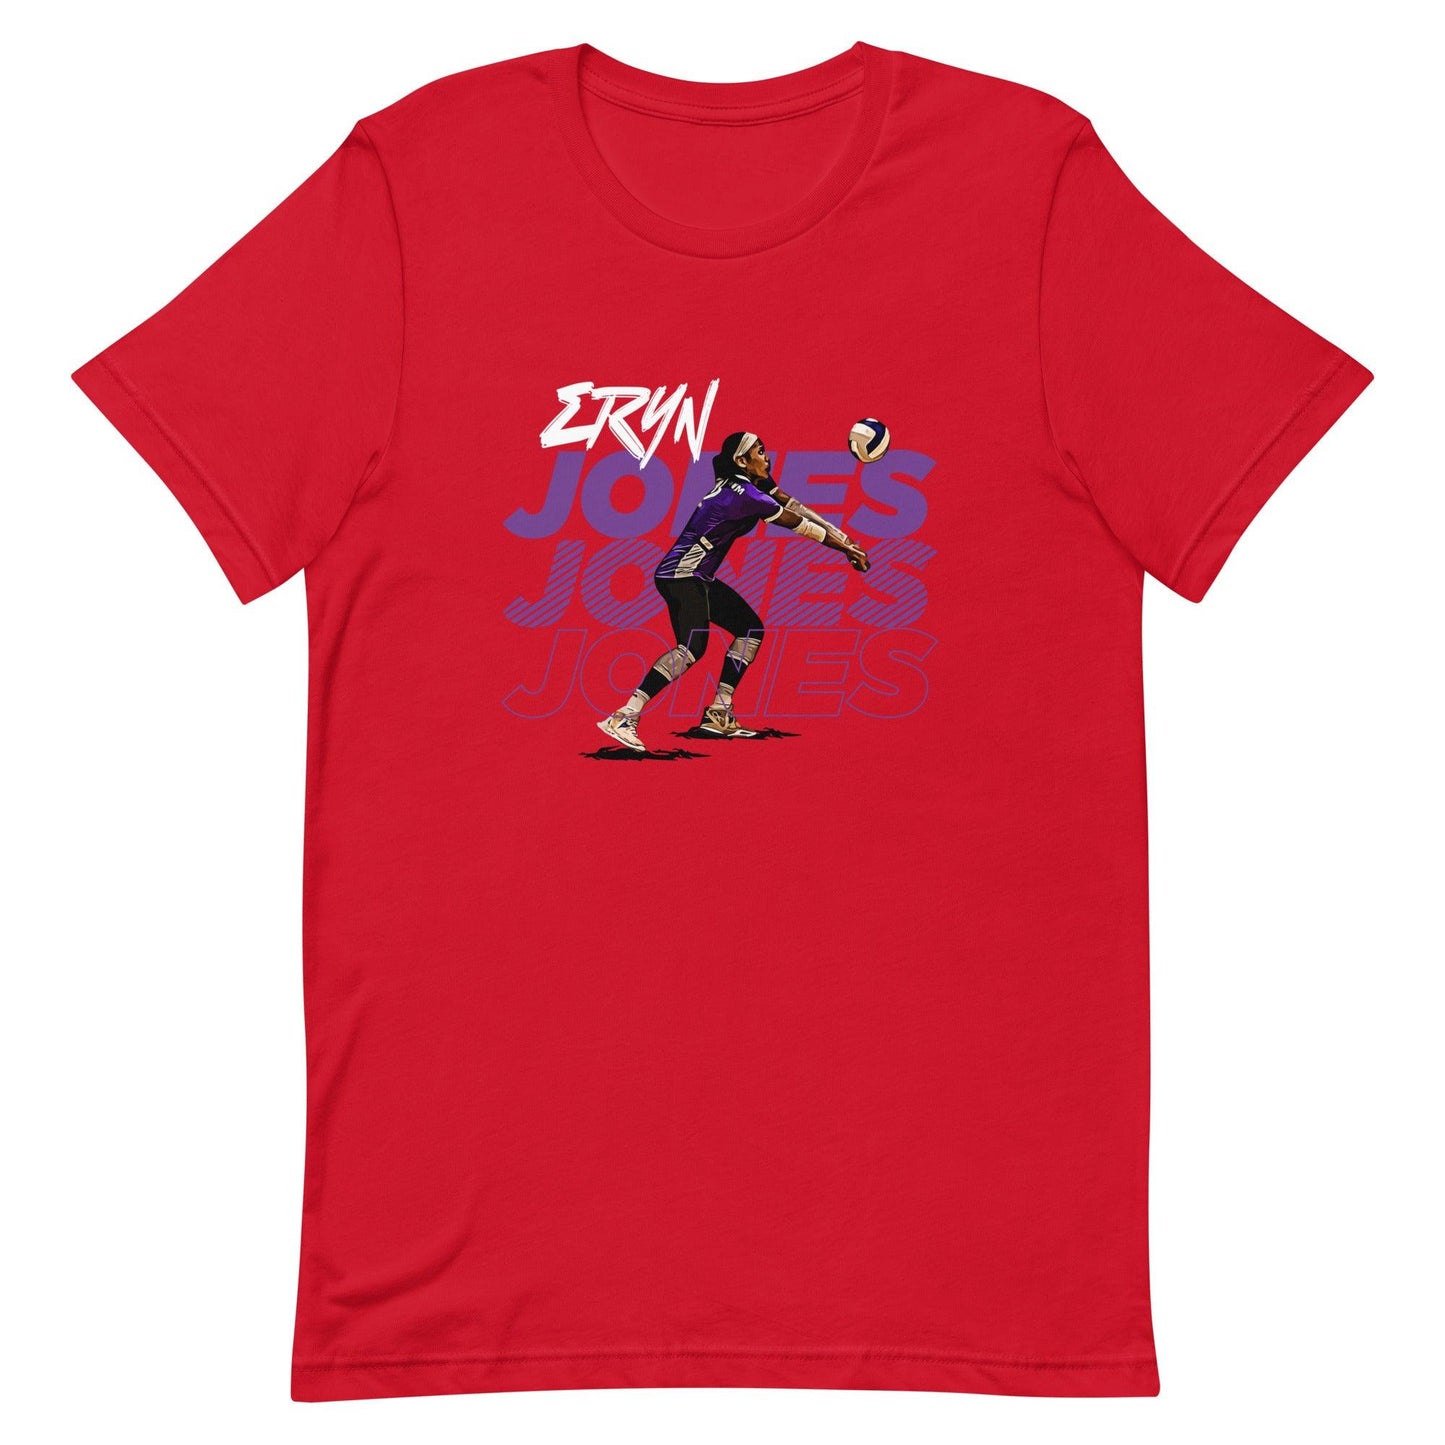 Eryn Jones "Gameday" t-shirt - Fan Arch